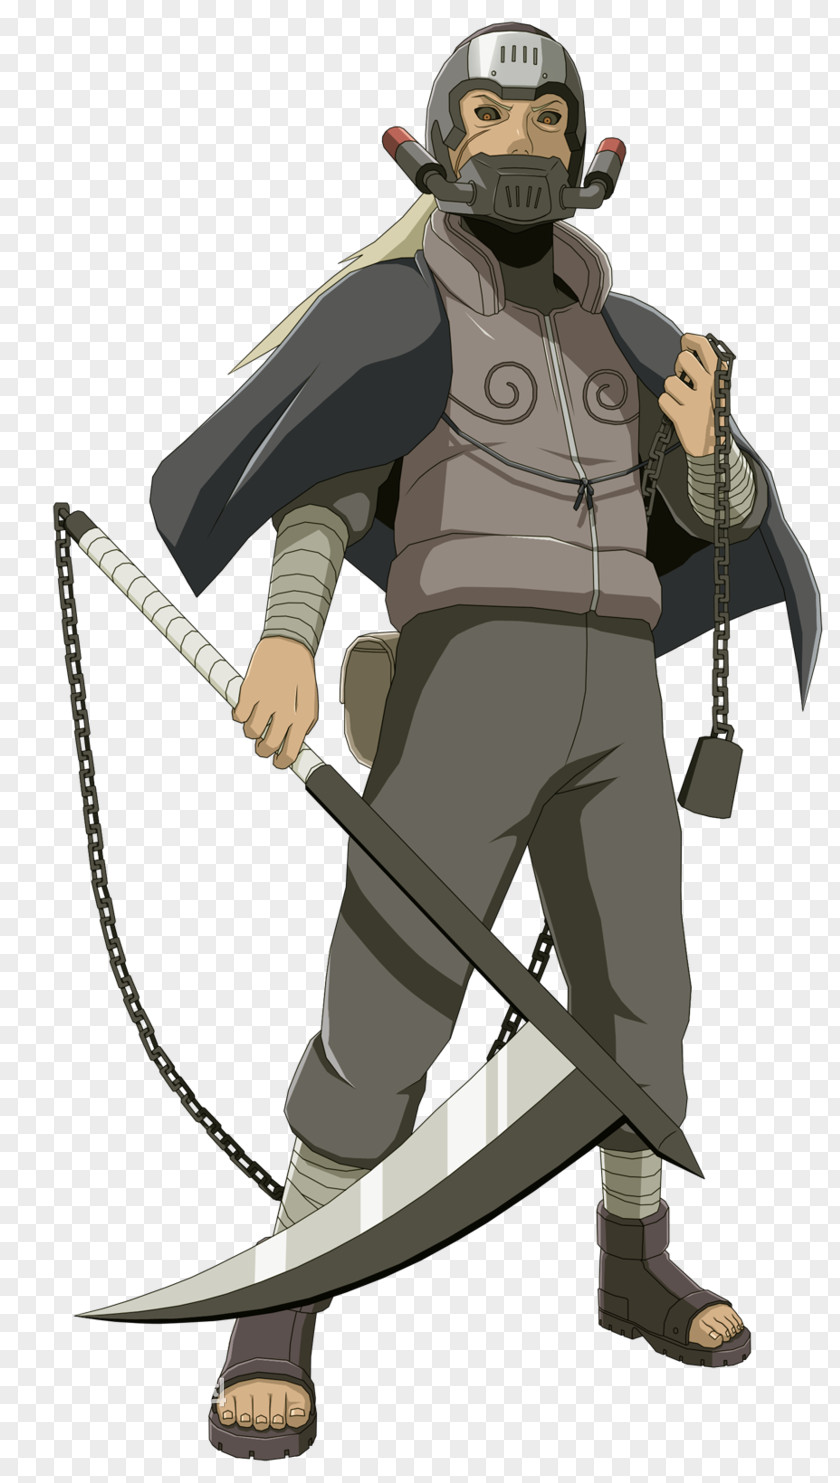 Naruto Shippuden: Ultimate Ninja Storm 3 Nagato Sasuke Uchiha Naruto: PNG